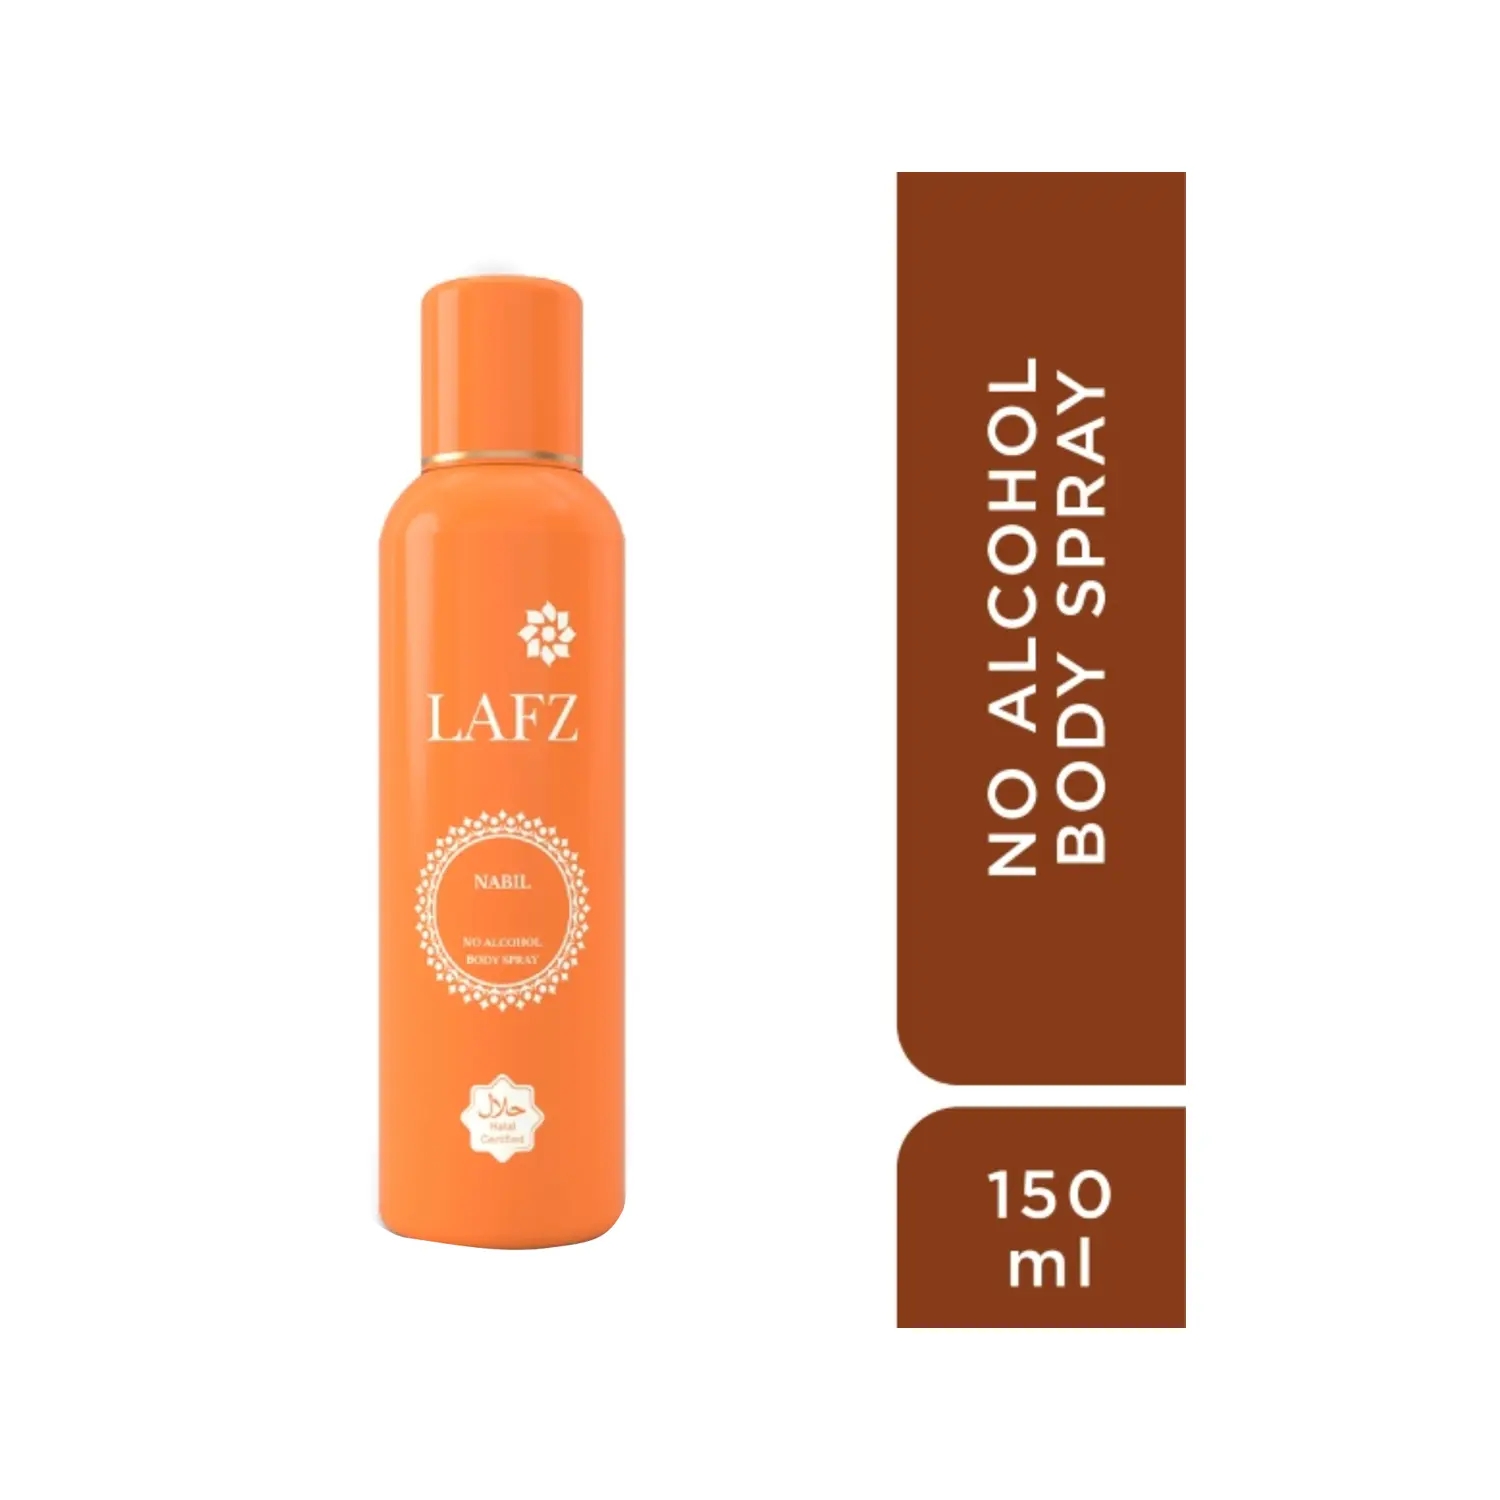 LAFZ | Lafz Nabil No Alcohol Deodorant Body - (150ml)